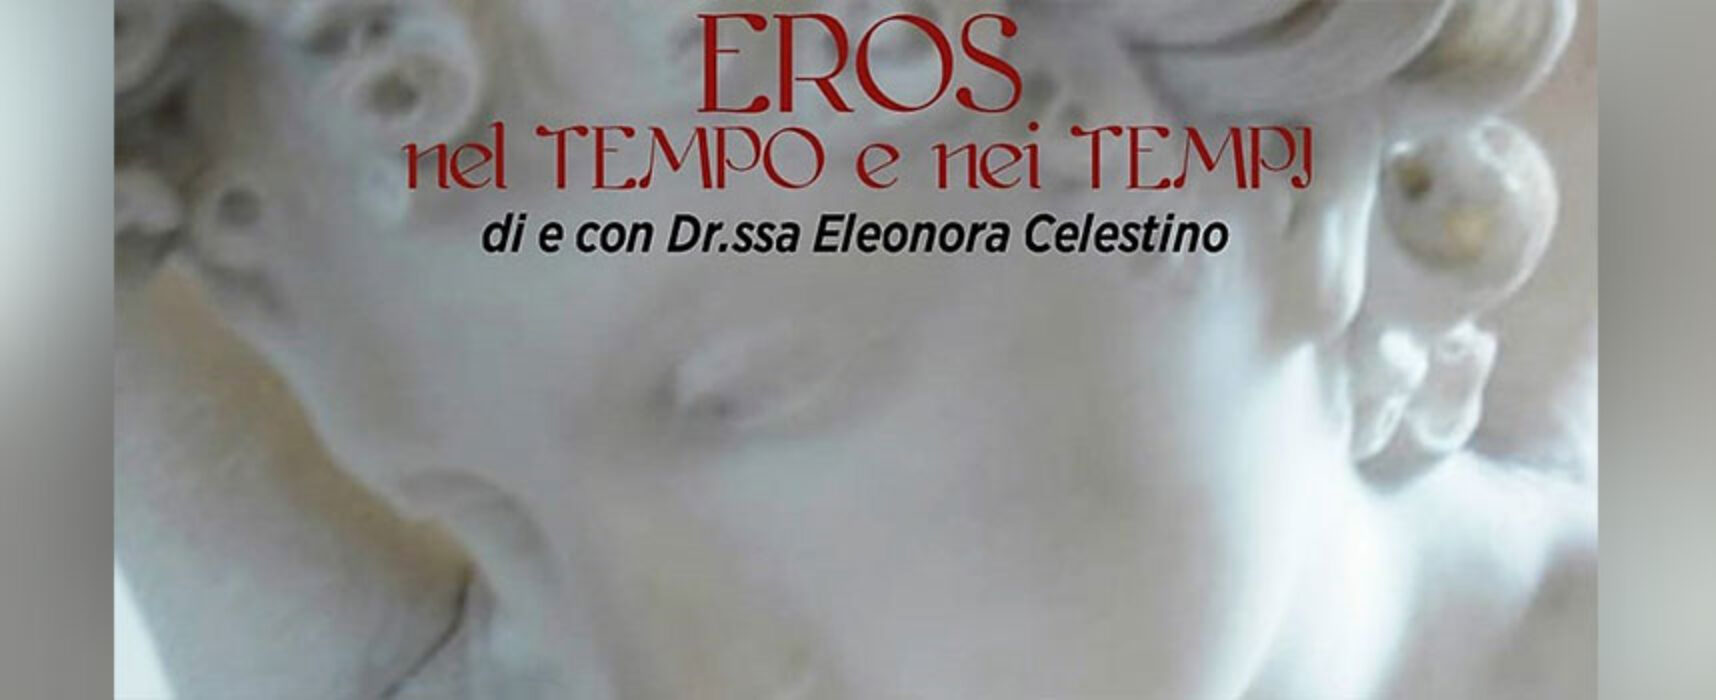 Le Vecchie Segherie Mastrototaro ospitano lo spettacolo “Eros nel tempo e nei tempi”